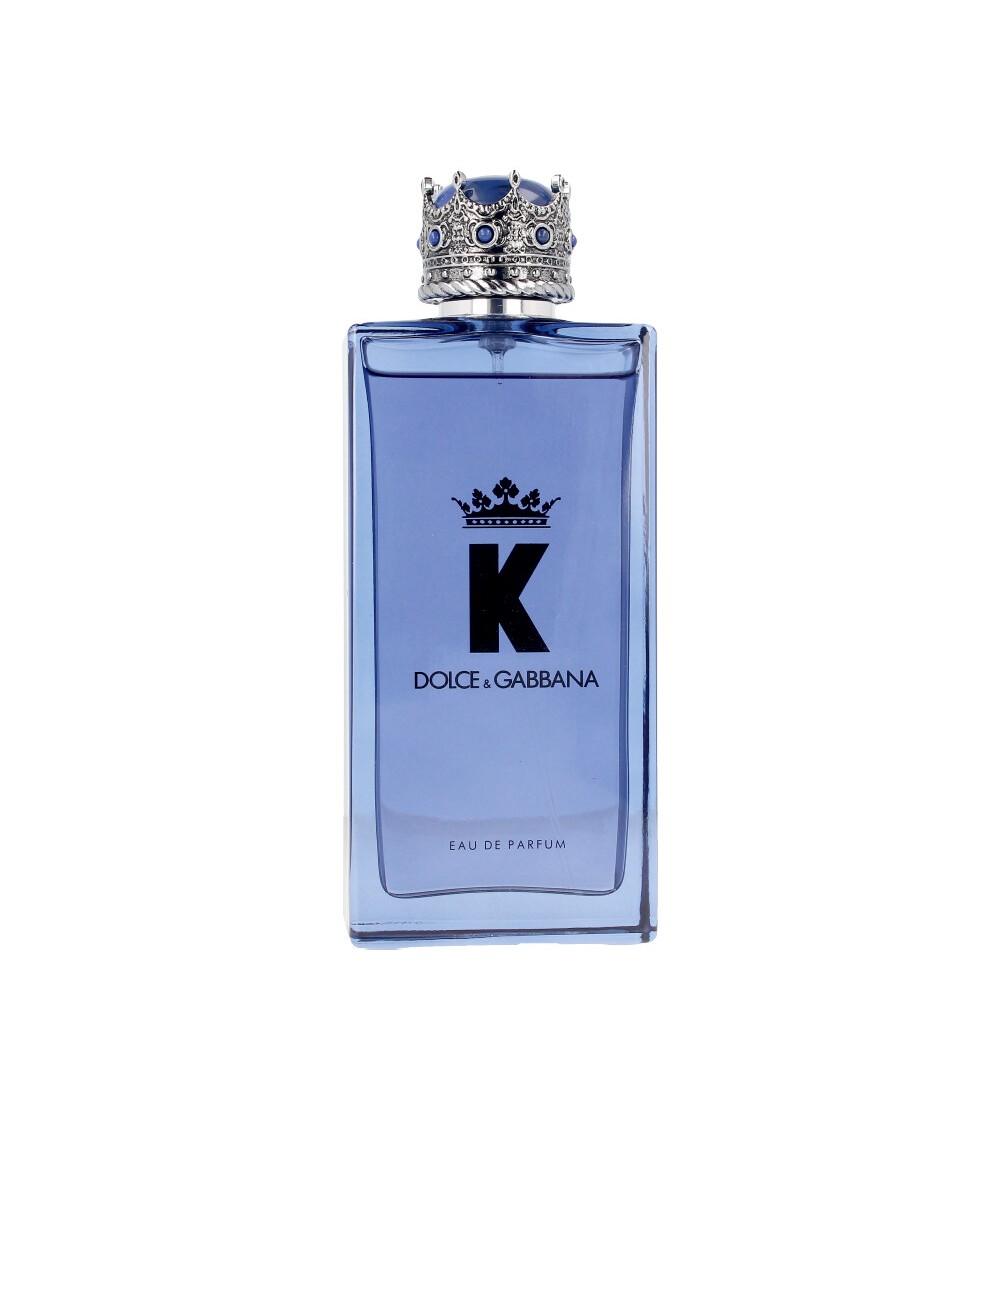 K BY DOLCE&GABBANA eau de parfum vaporisateur